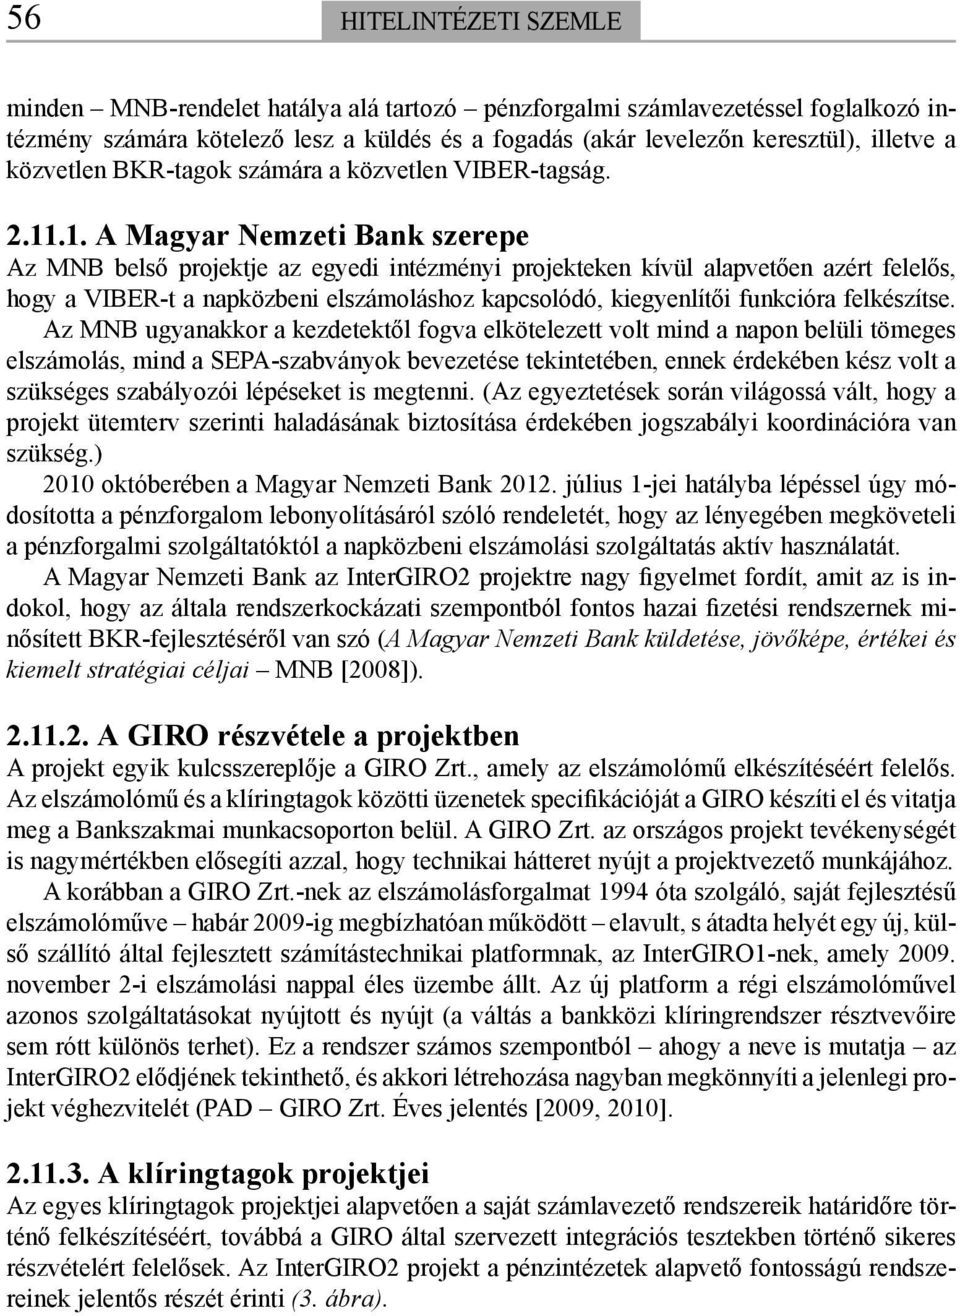 .1. A Magyar Nemzeti Bank szerepe Az MNB belső projektje az egyedi intézményi projekteken kívül alapvetően azért felelős, hogy a VIBER-t a napközbeni elszámoláshoz kapcsolódó, kiegyenlítői funkcióra